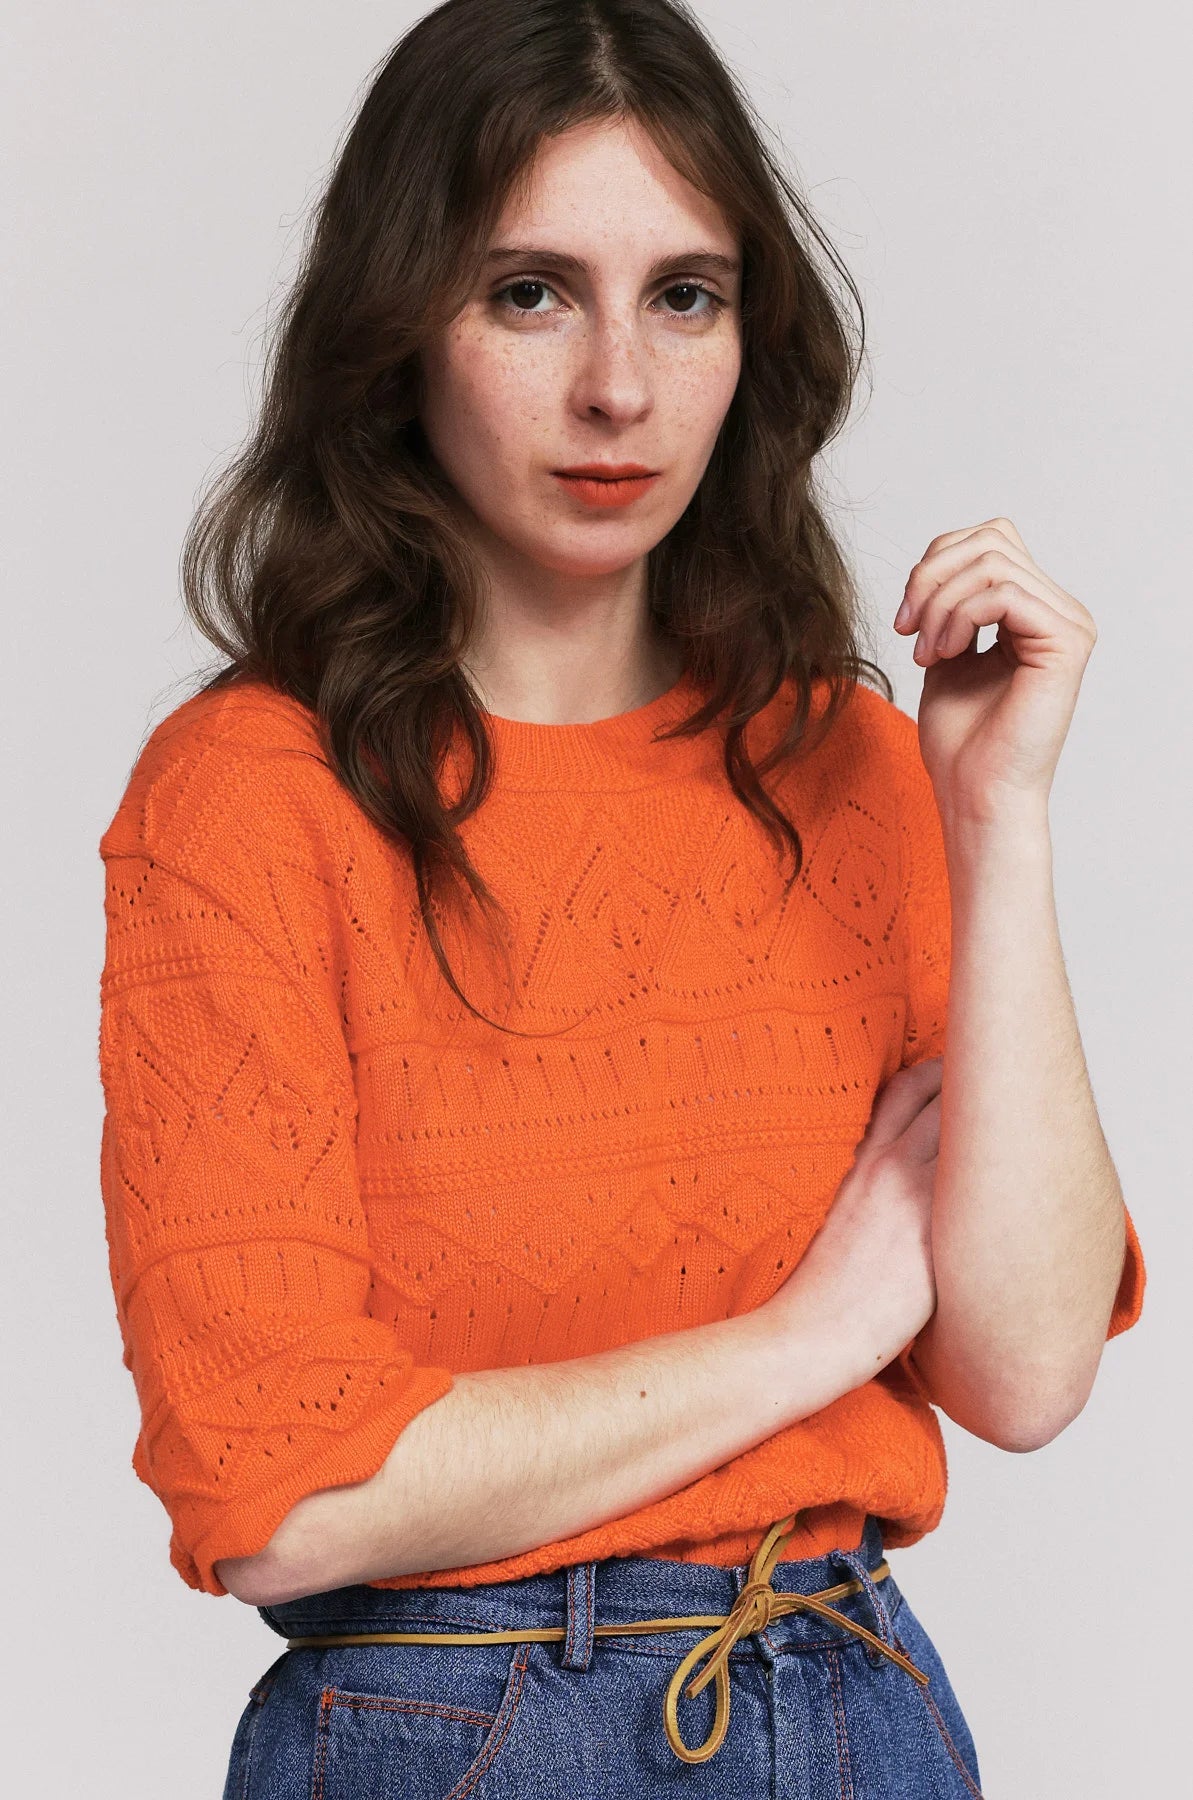 Produit maille Taline manches courtes couleur Orange tricoté par la marque Parisienne Tricots Jean Marc 1972.